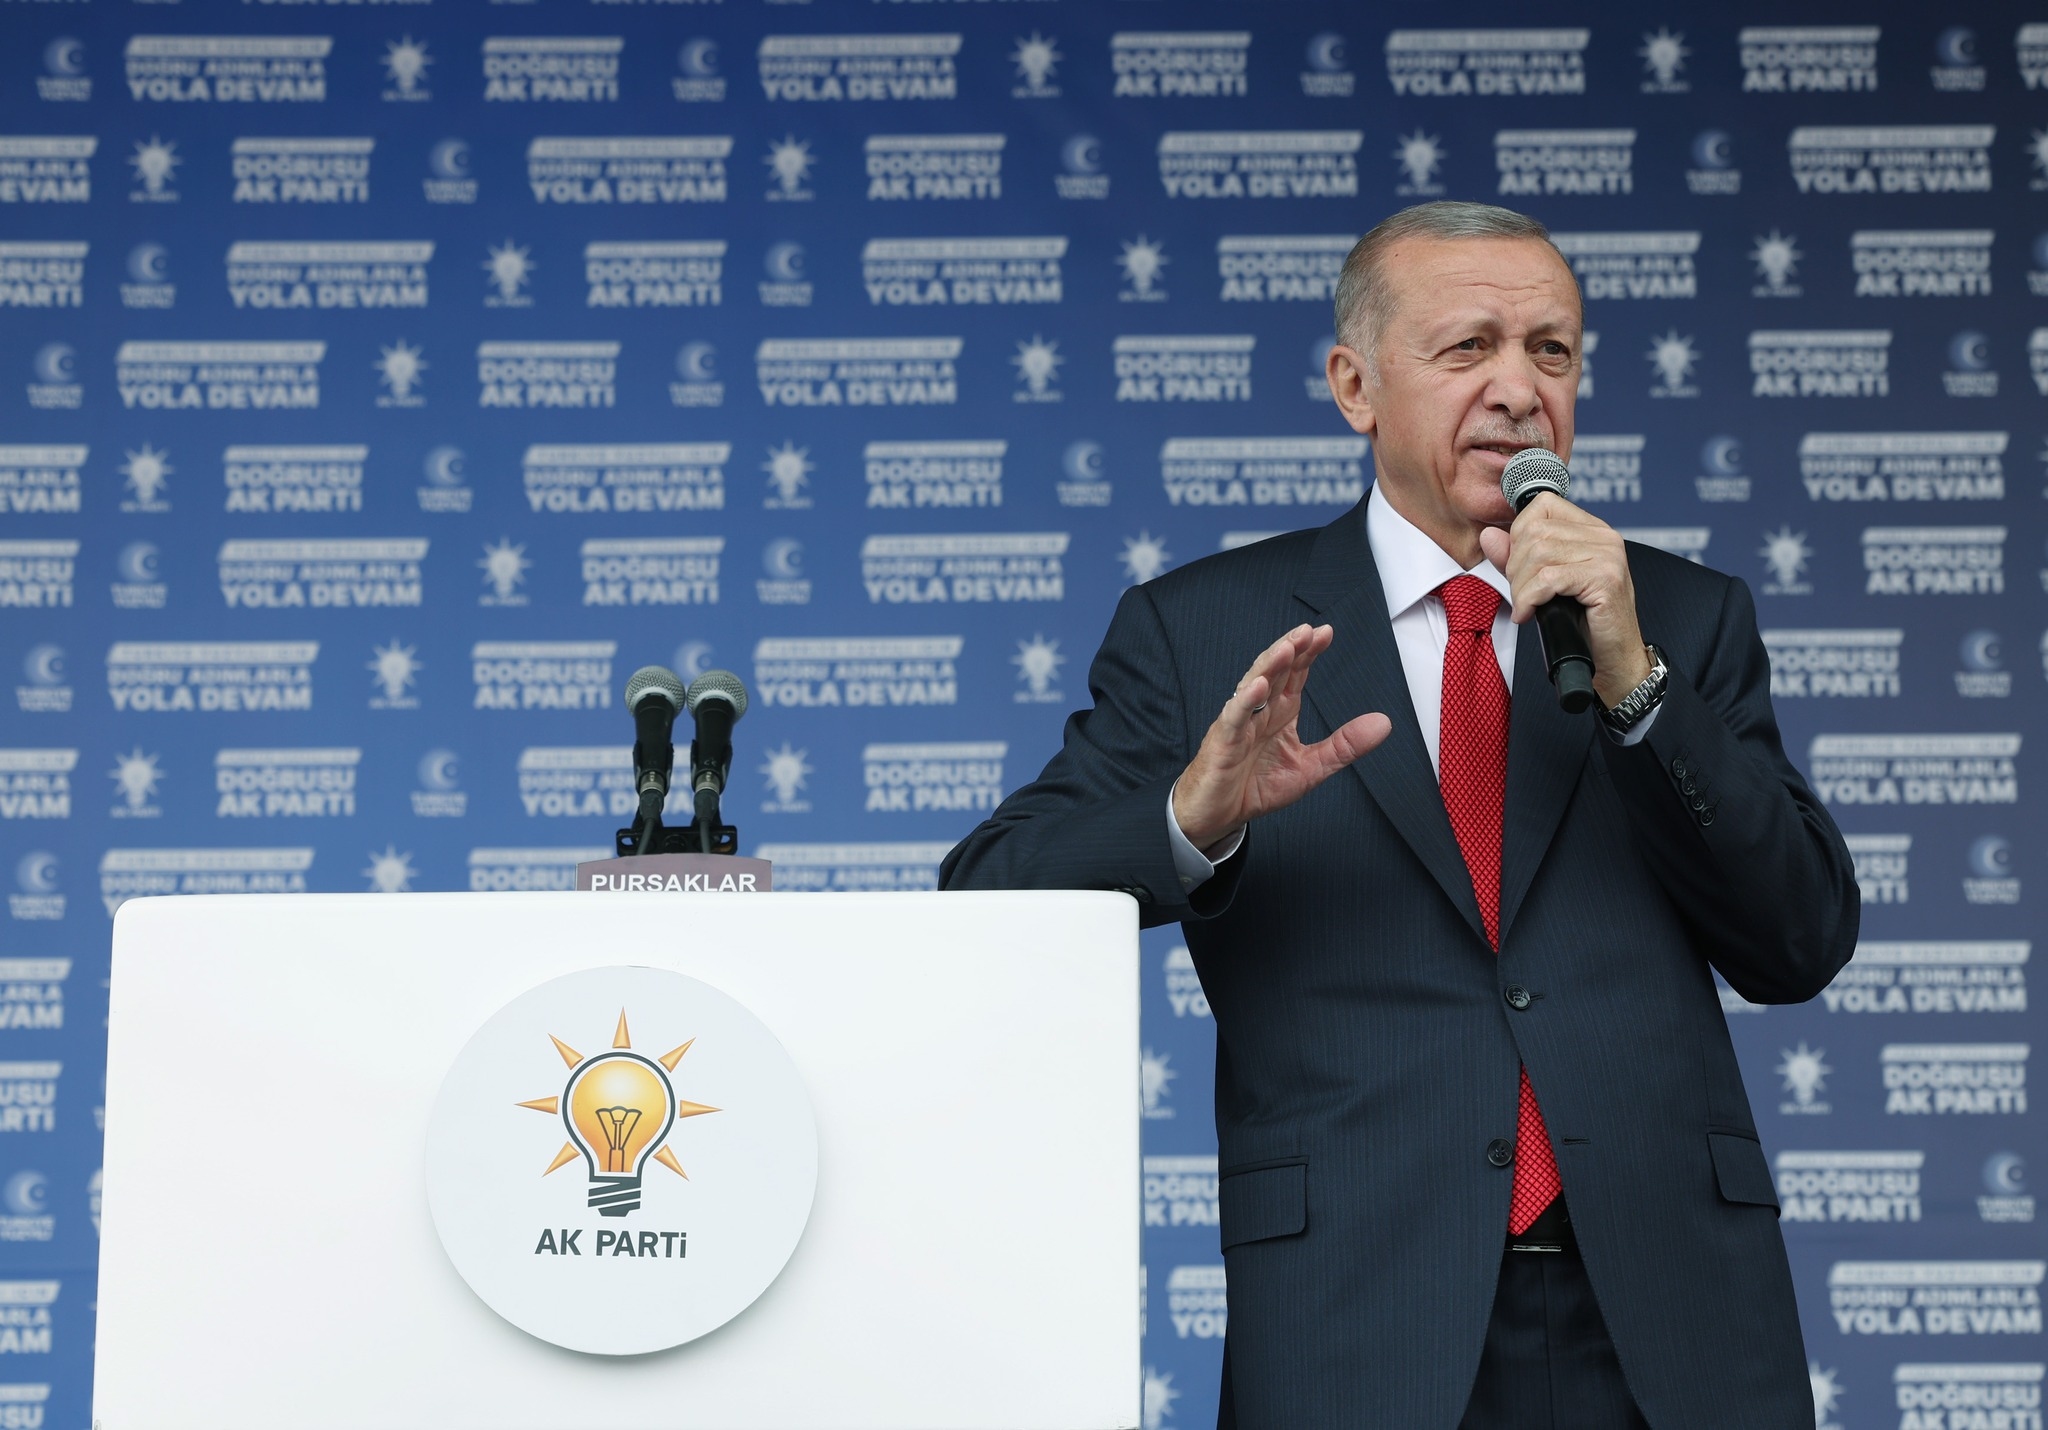 تأثر أردوغان بمفكرين وأدباء أتراك مثل جلال الدين الرومي